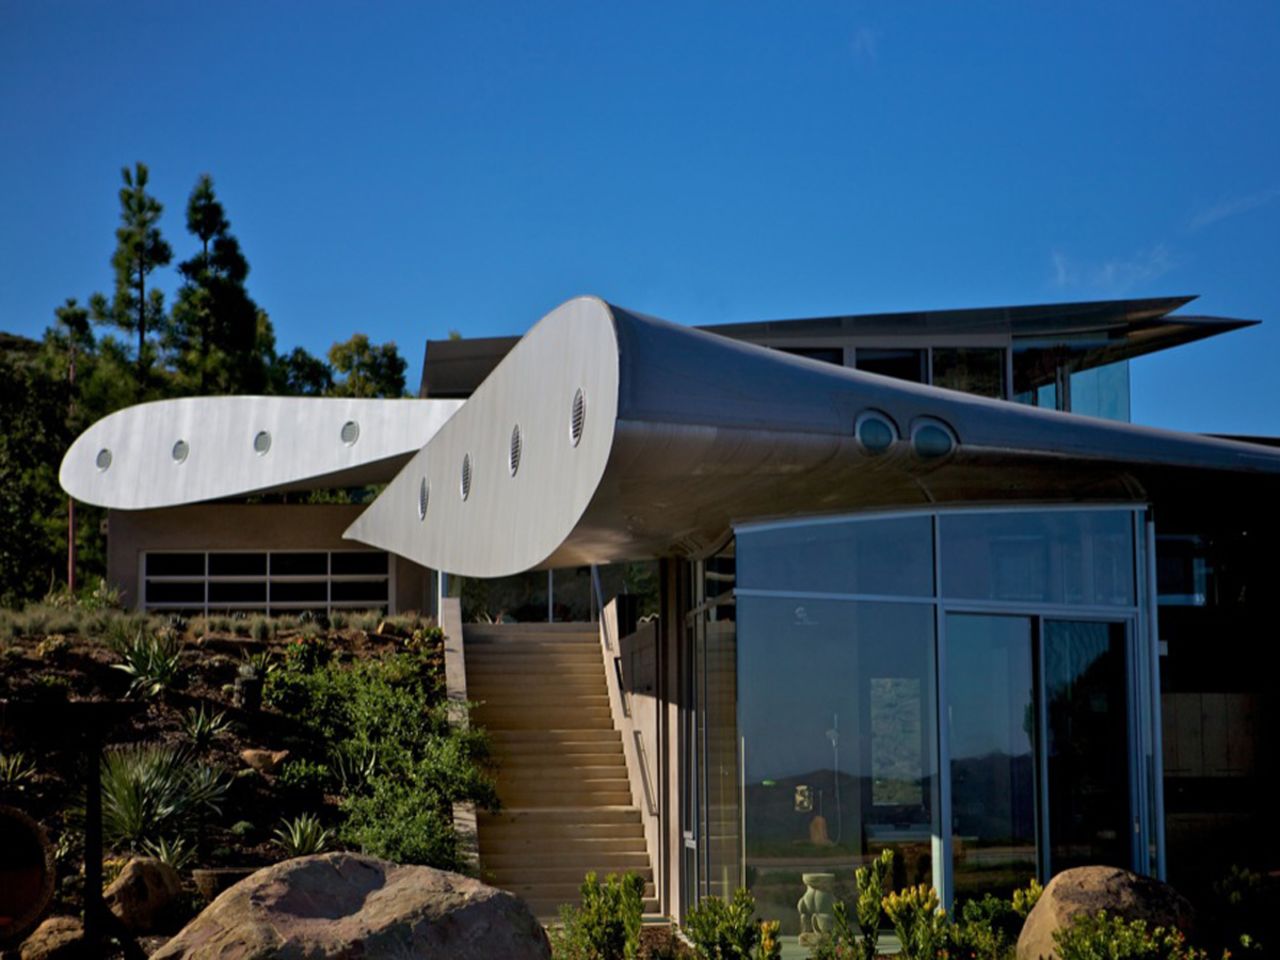 El arquitecto David Hertz diseñó el techo de esta casa  en Malibú a partir de las alas de un Boeing 747 para un cliente que pidió formas curvilíneas y femeninas.